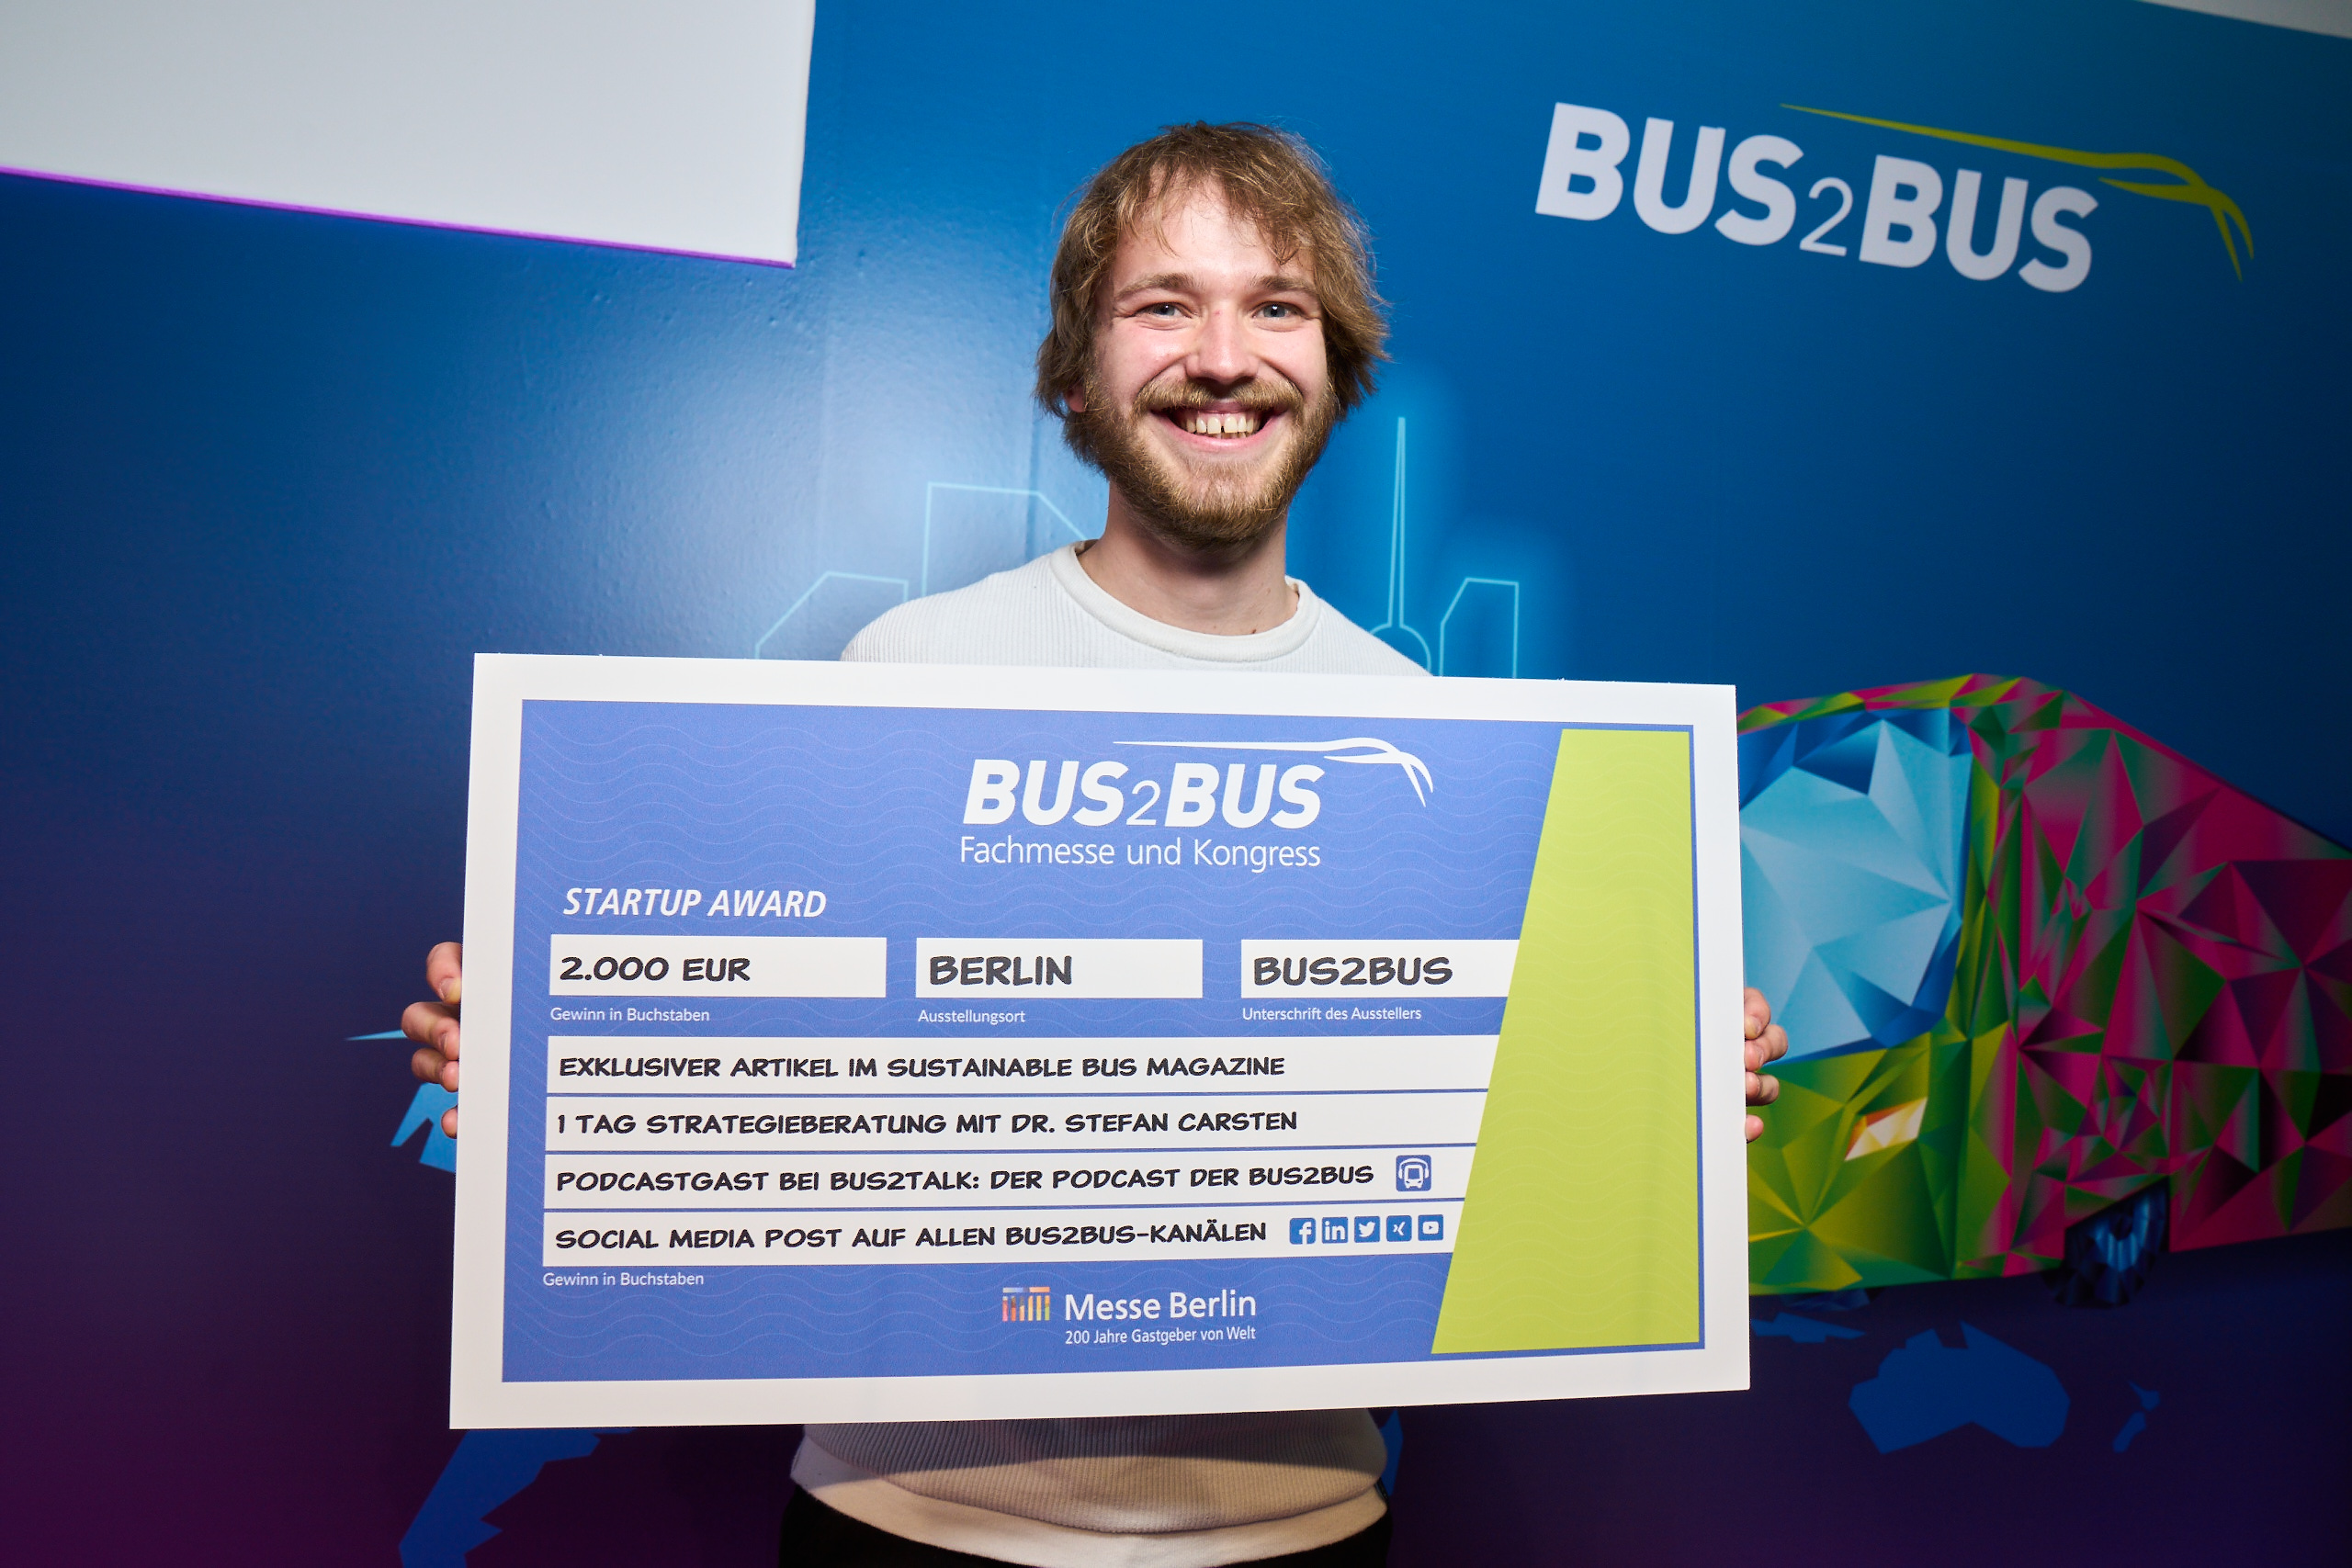 Das Bild zeigt die Preisverleihung des Startup Awards 2022 und den Gewinner Ben Gallmeister von Vesputi, der einen Scheck in den Händen hält.